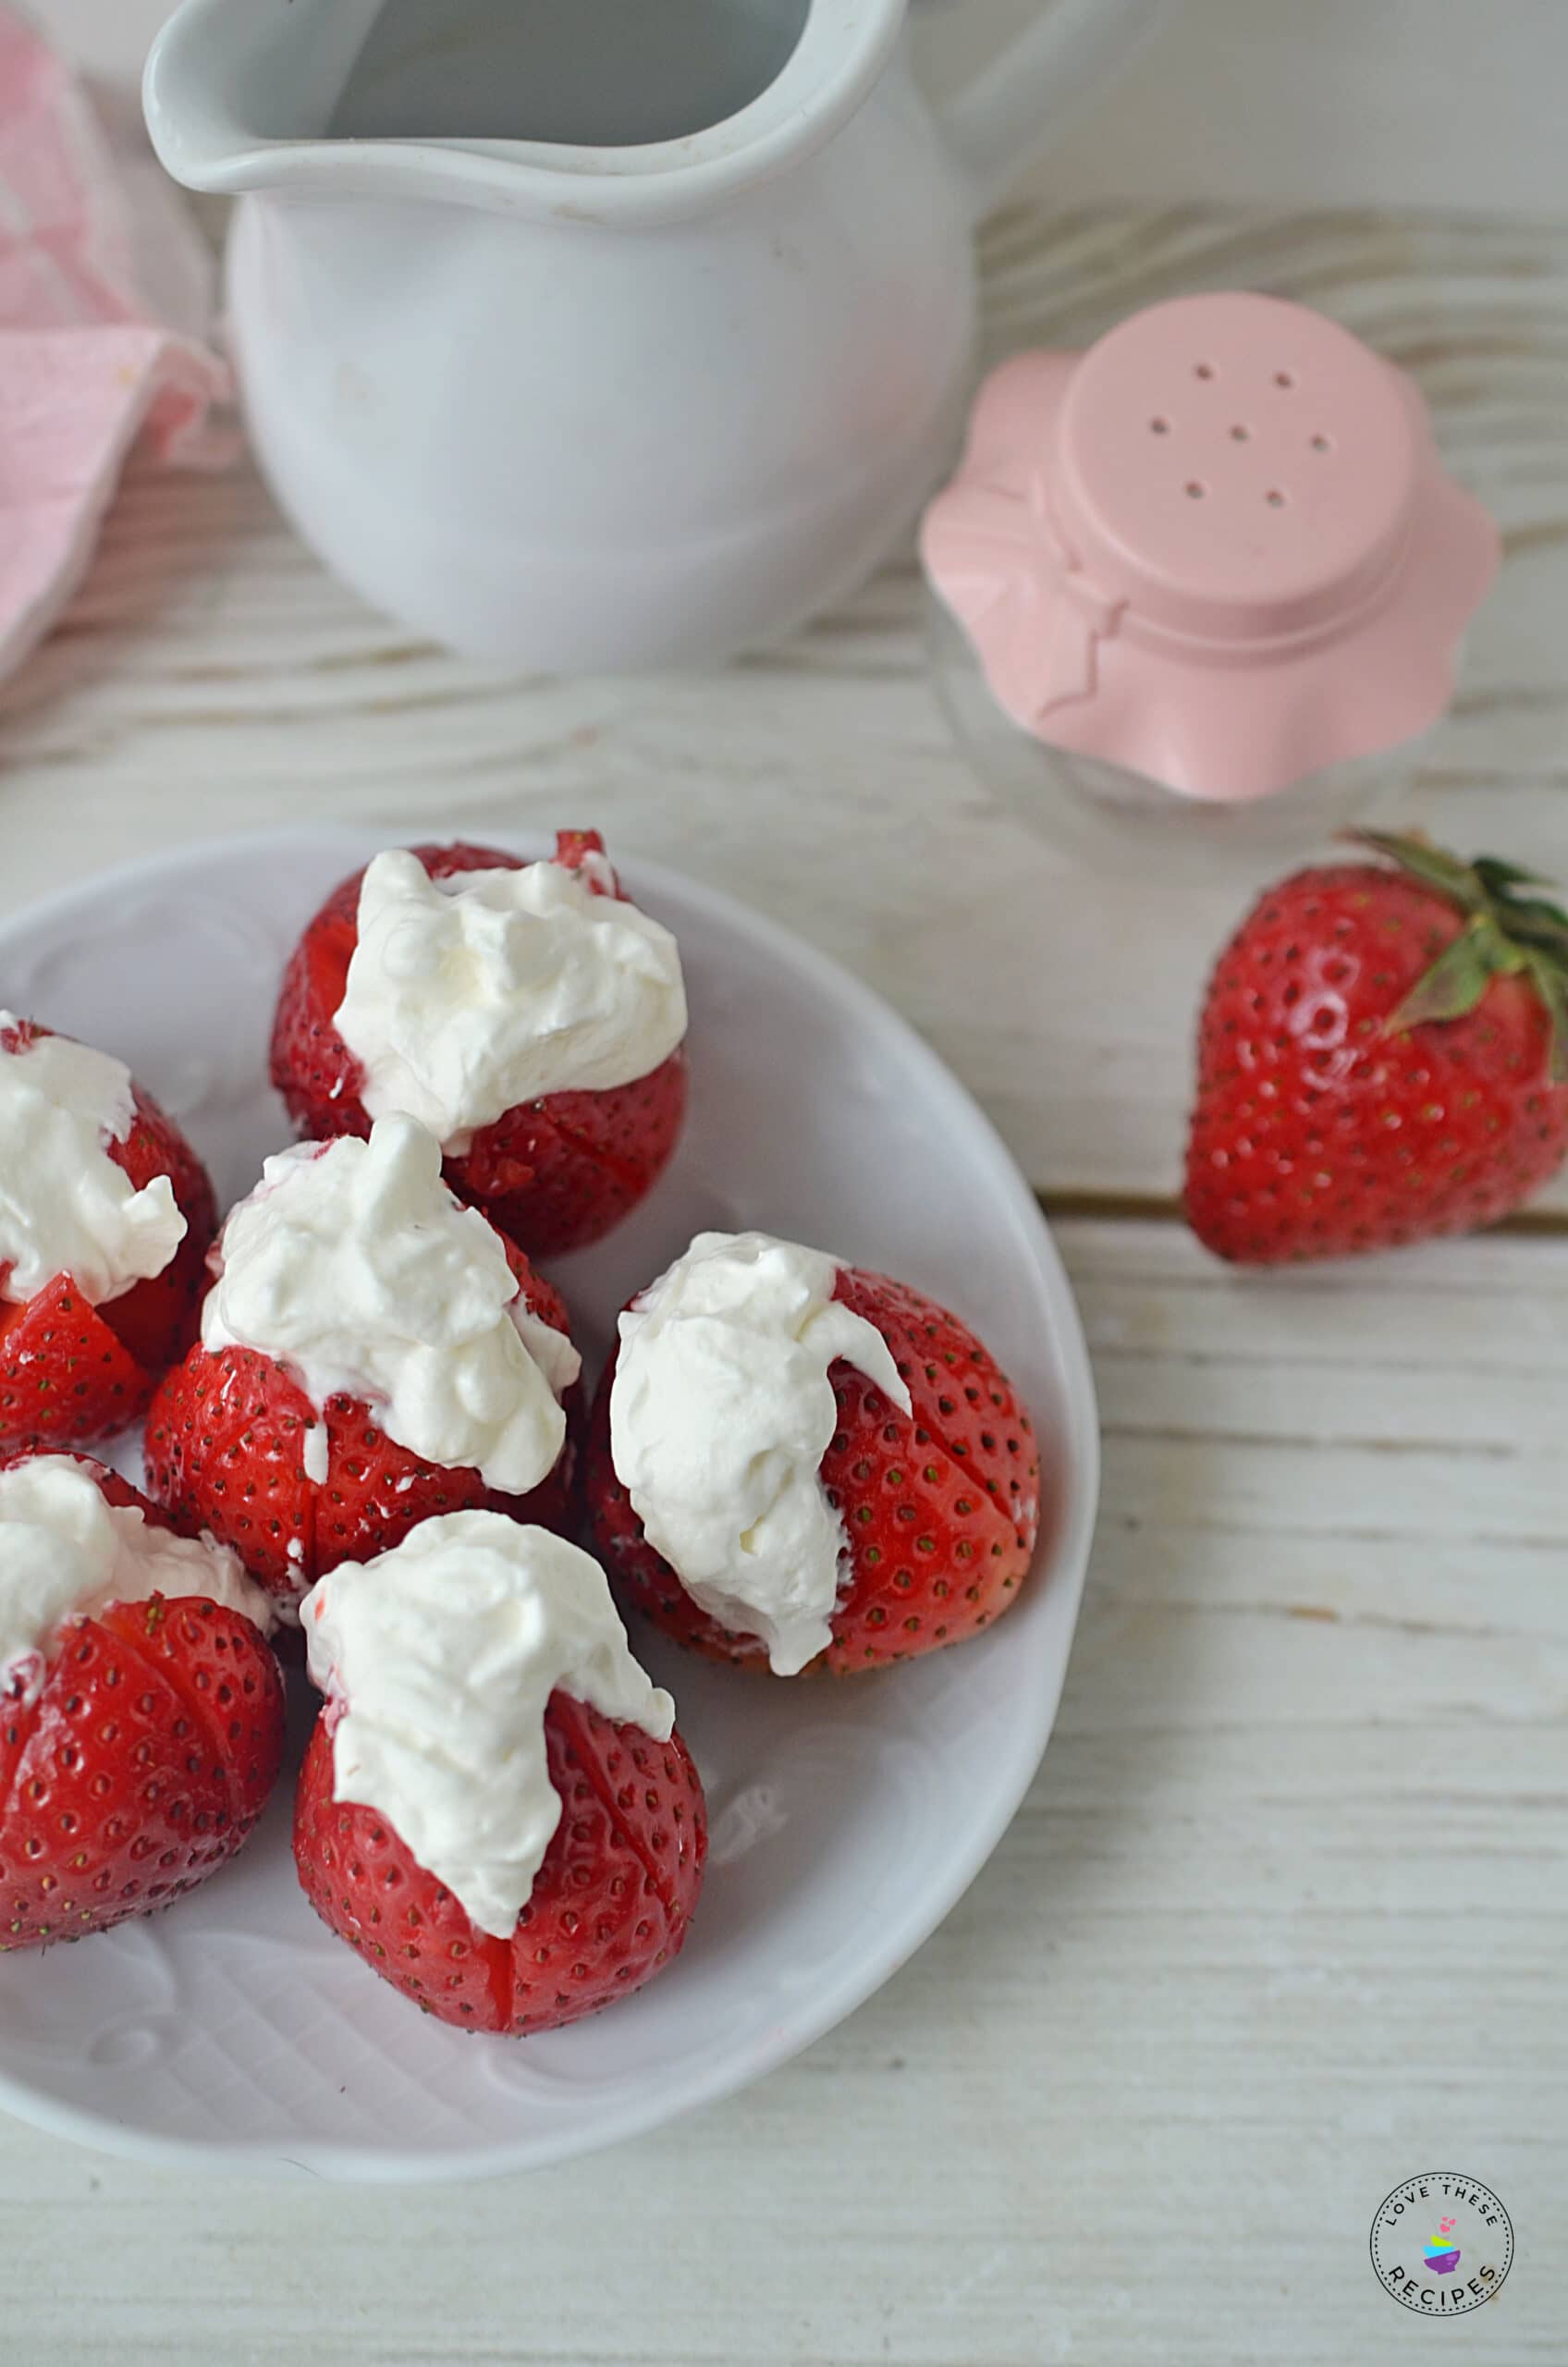 Easy Cheesecake-stuffed Strawberries